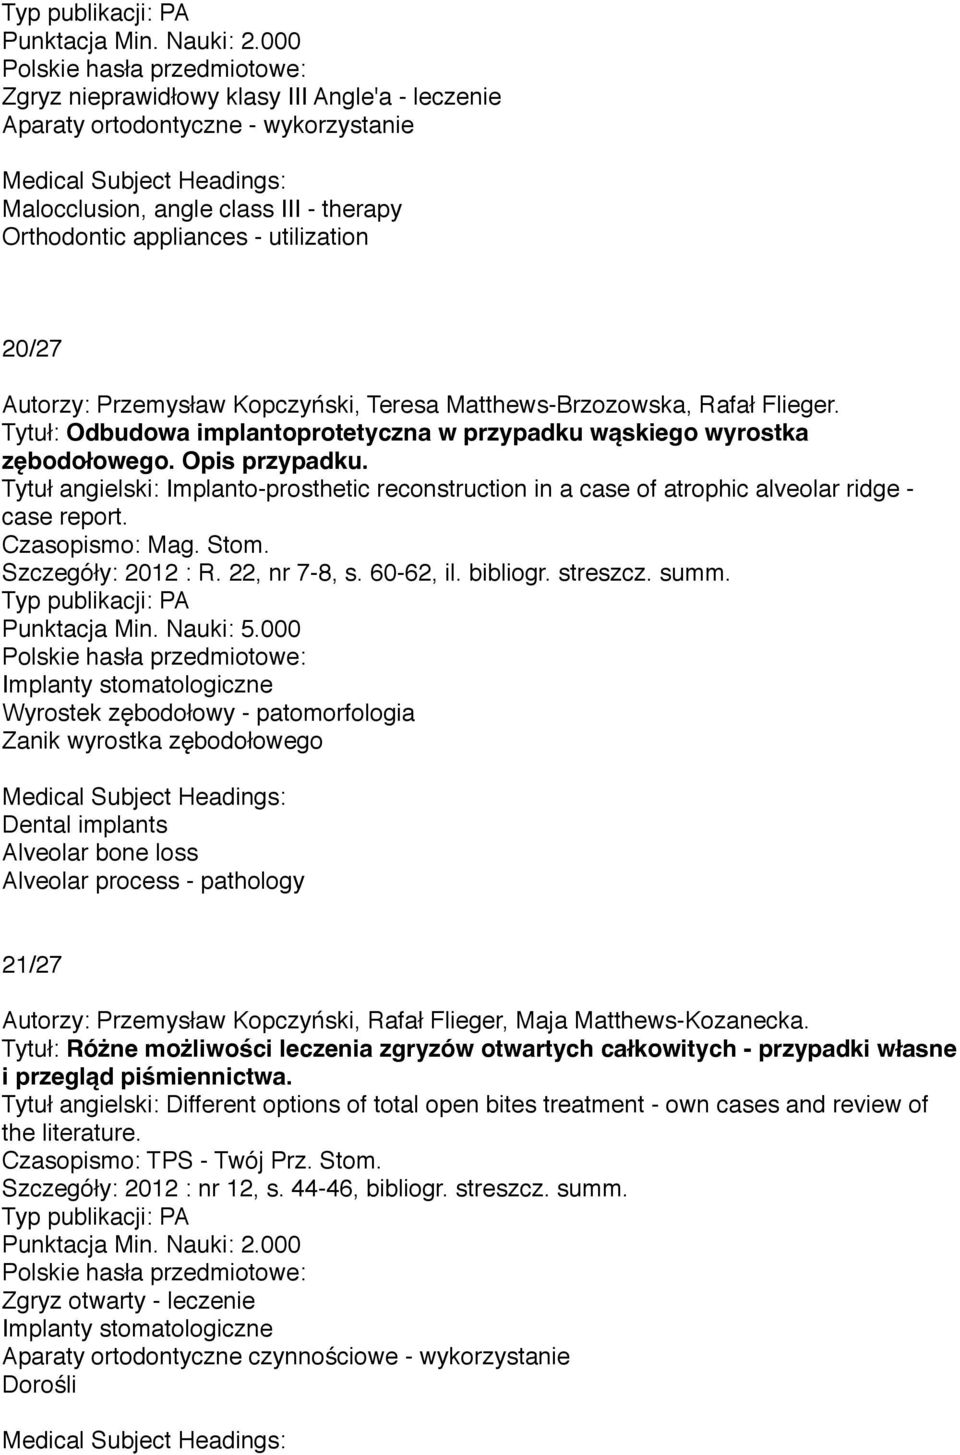 Tytuł angielski: Implanto-prosthetic reconstruction in a case of atrophic alveolar ridge - case report. Czasopismo: Mag. Stom. Szczegóły: 2012 : R. 22, nr 7-8, s. 60-62, il. bibliogr. streszcz. summ.